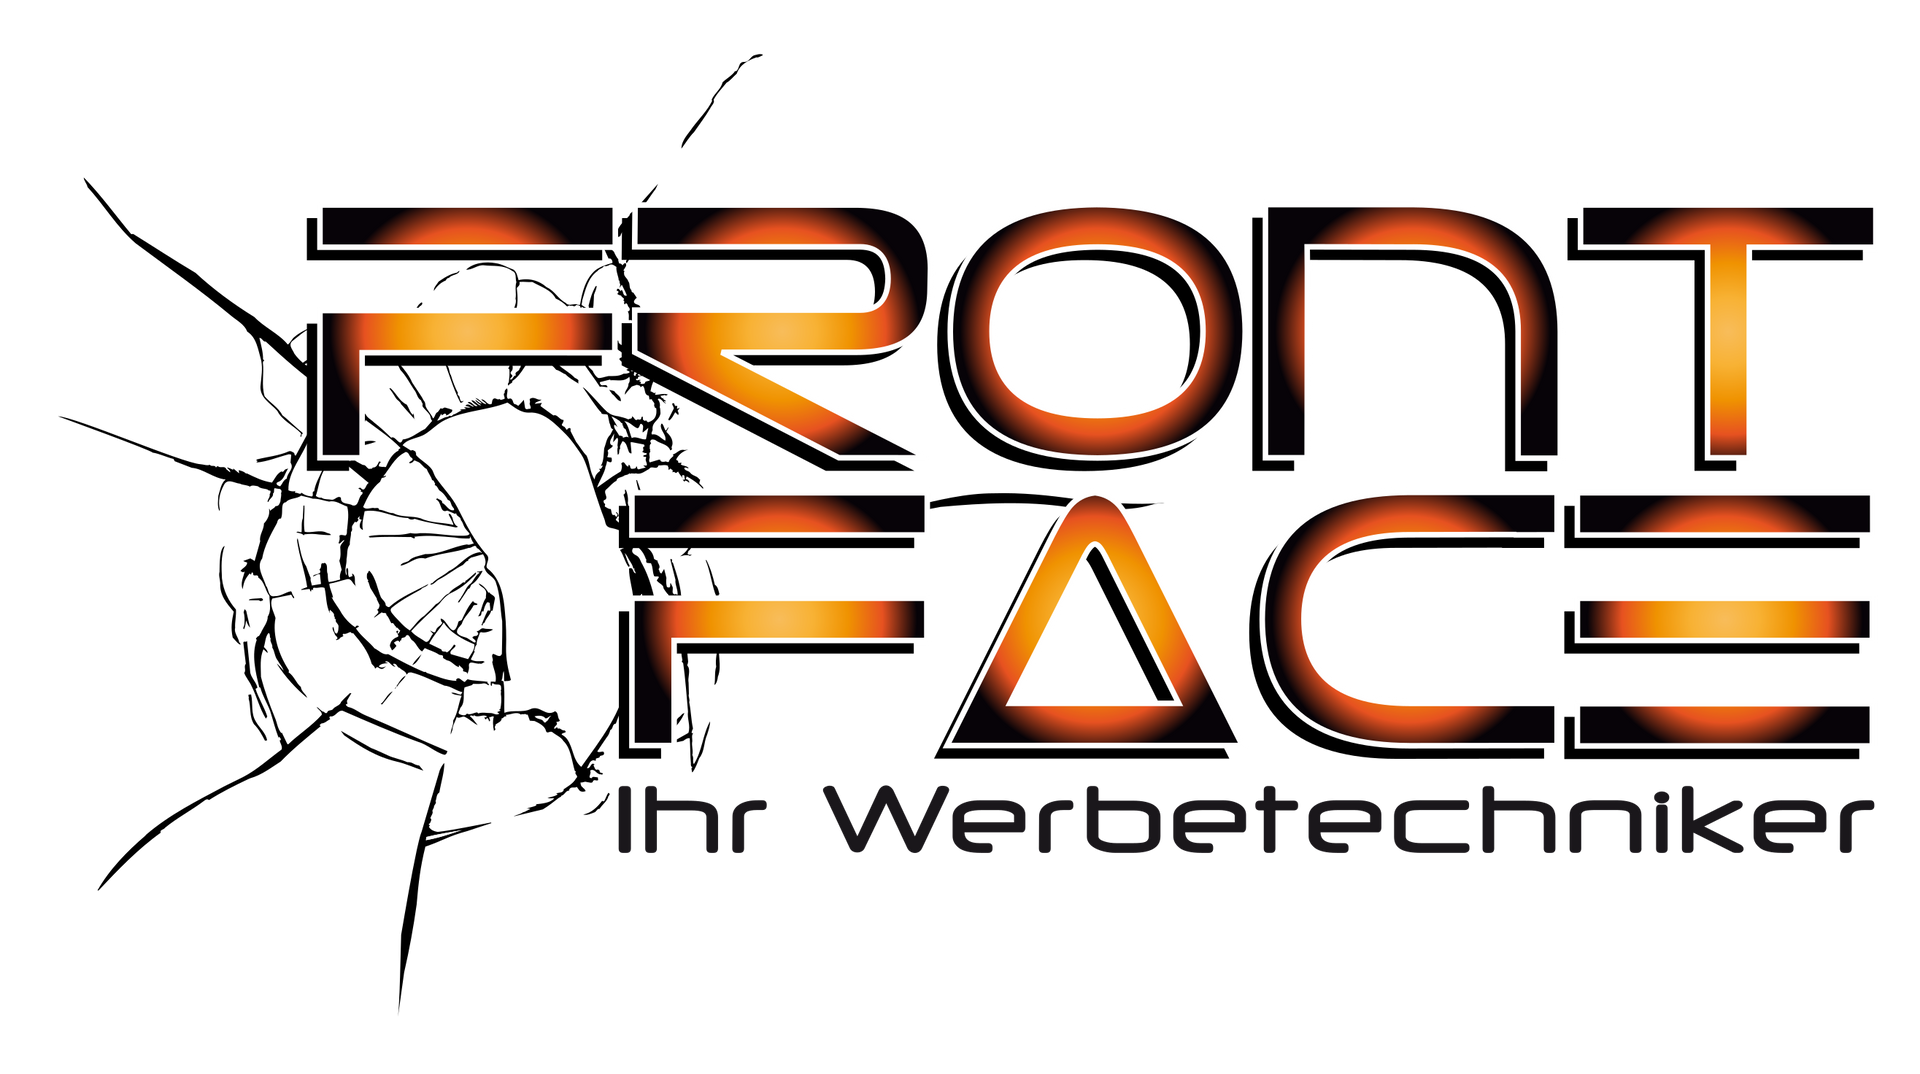 Logo Front Face  -  Ihr Werbetechniker